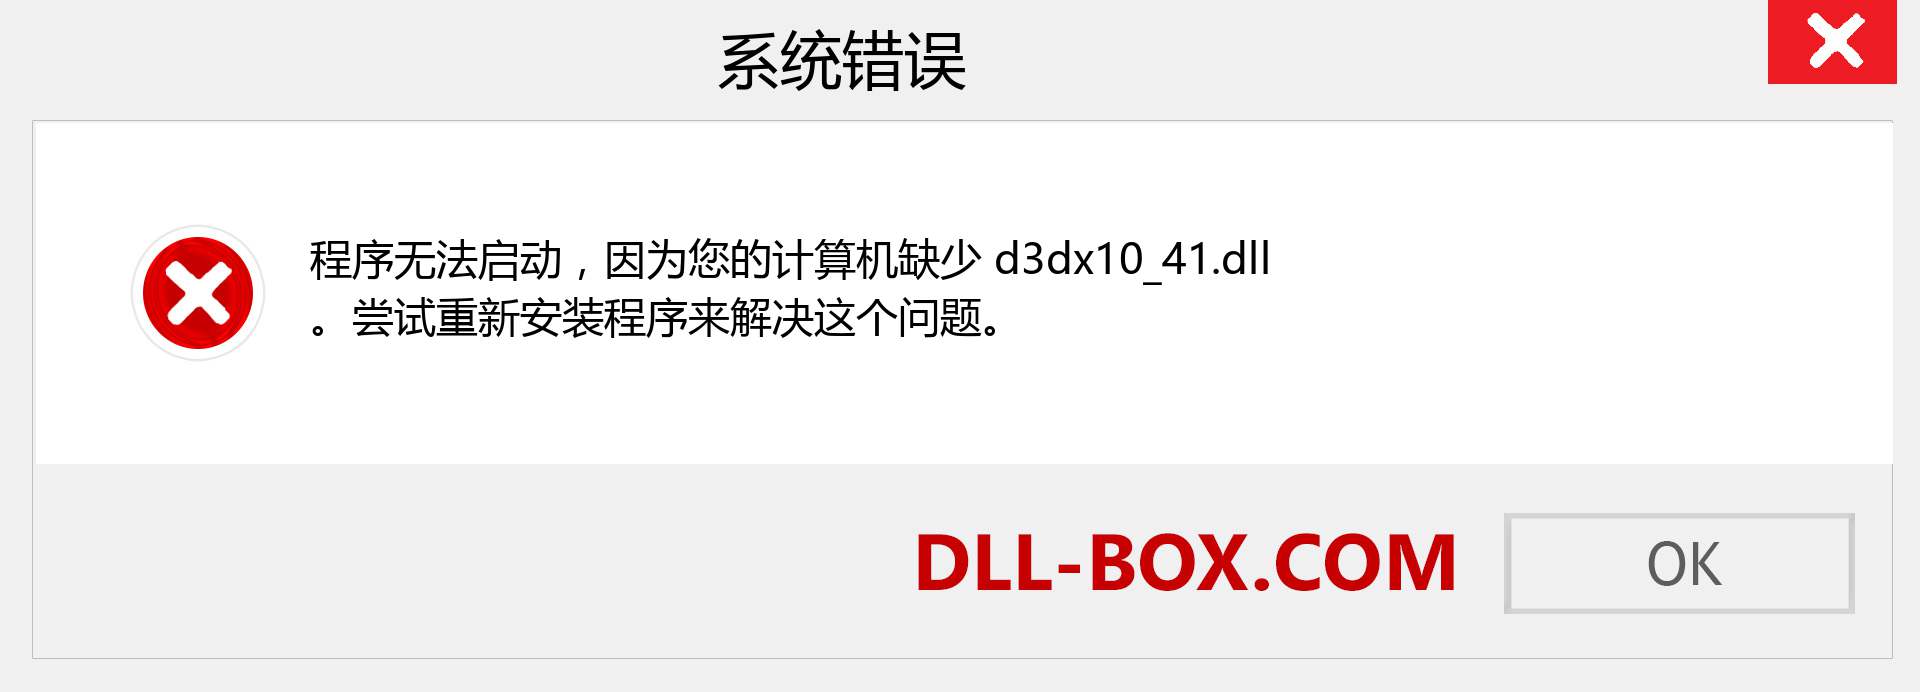 d3dx10_41.dll 文件丢失？。 适用于 Windows 7、8、10 的下载 - 修复 Windows、照片、图像上的 d3dx10_41 dll 丢失错误